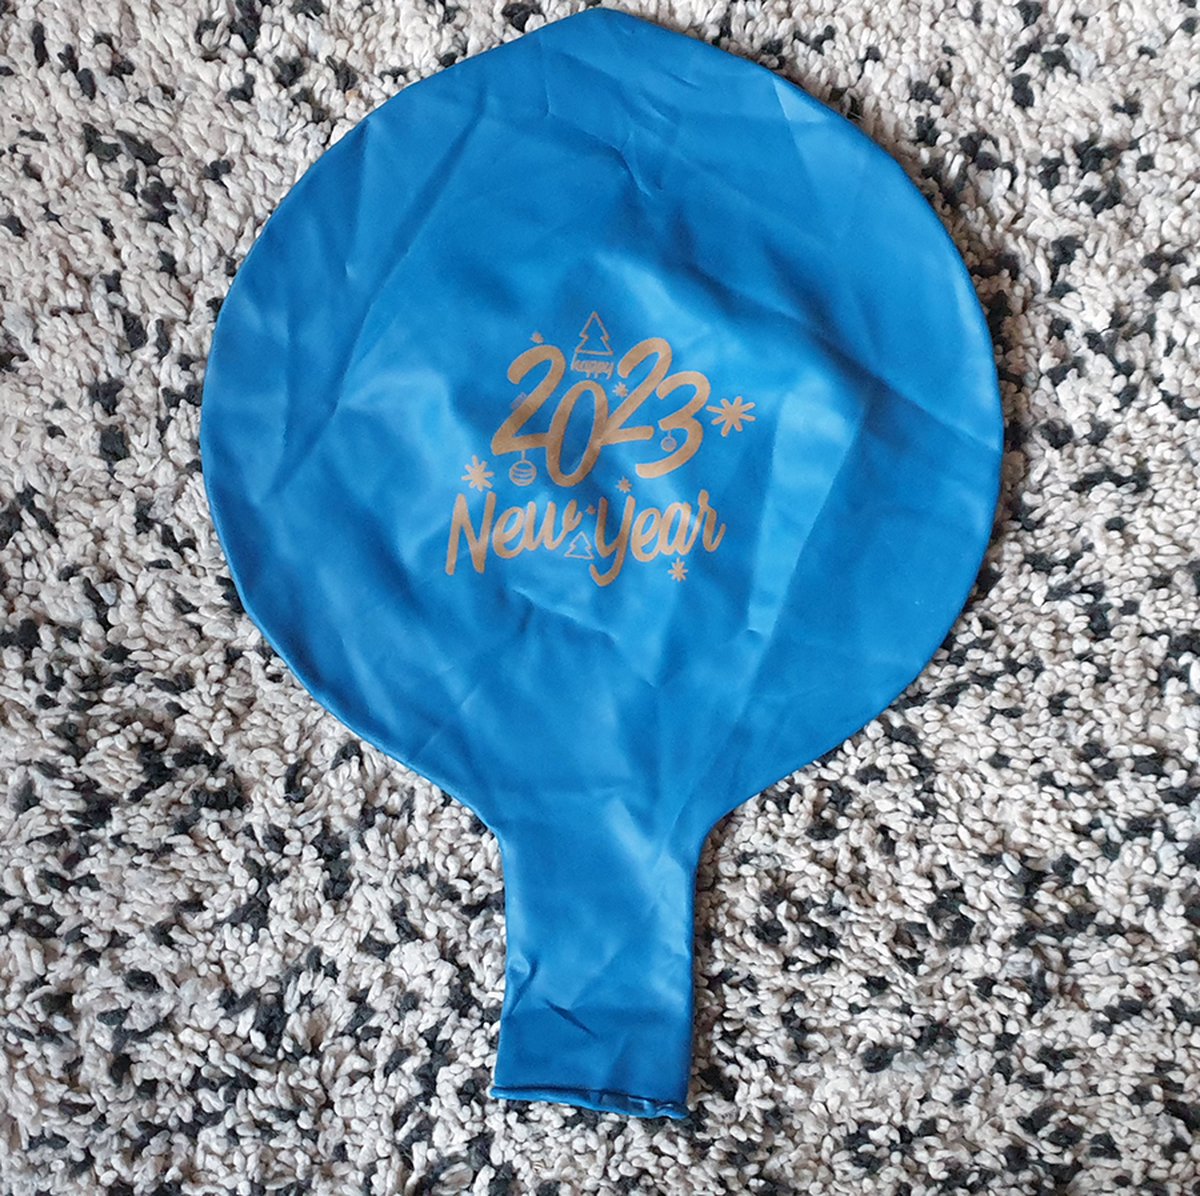 Grand ballon de plage gonflable 1,4 mètre de couleurs gonflées rouge / Wit/  Blauw